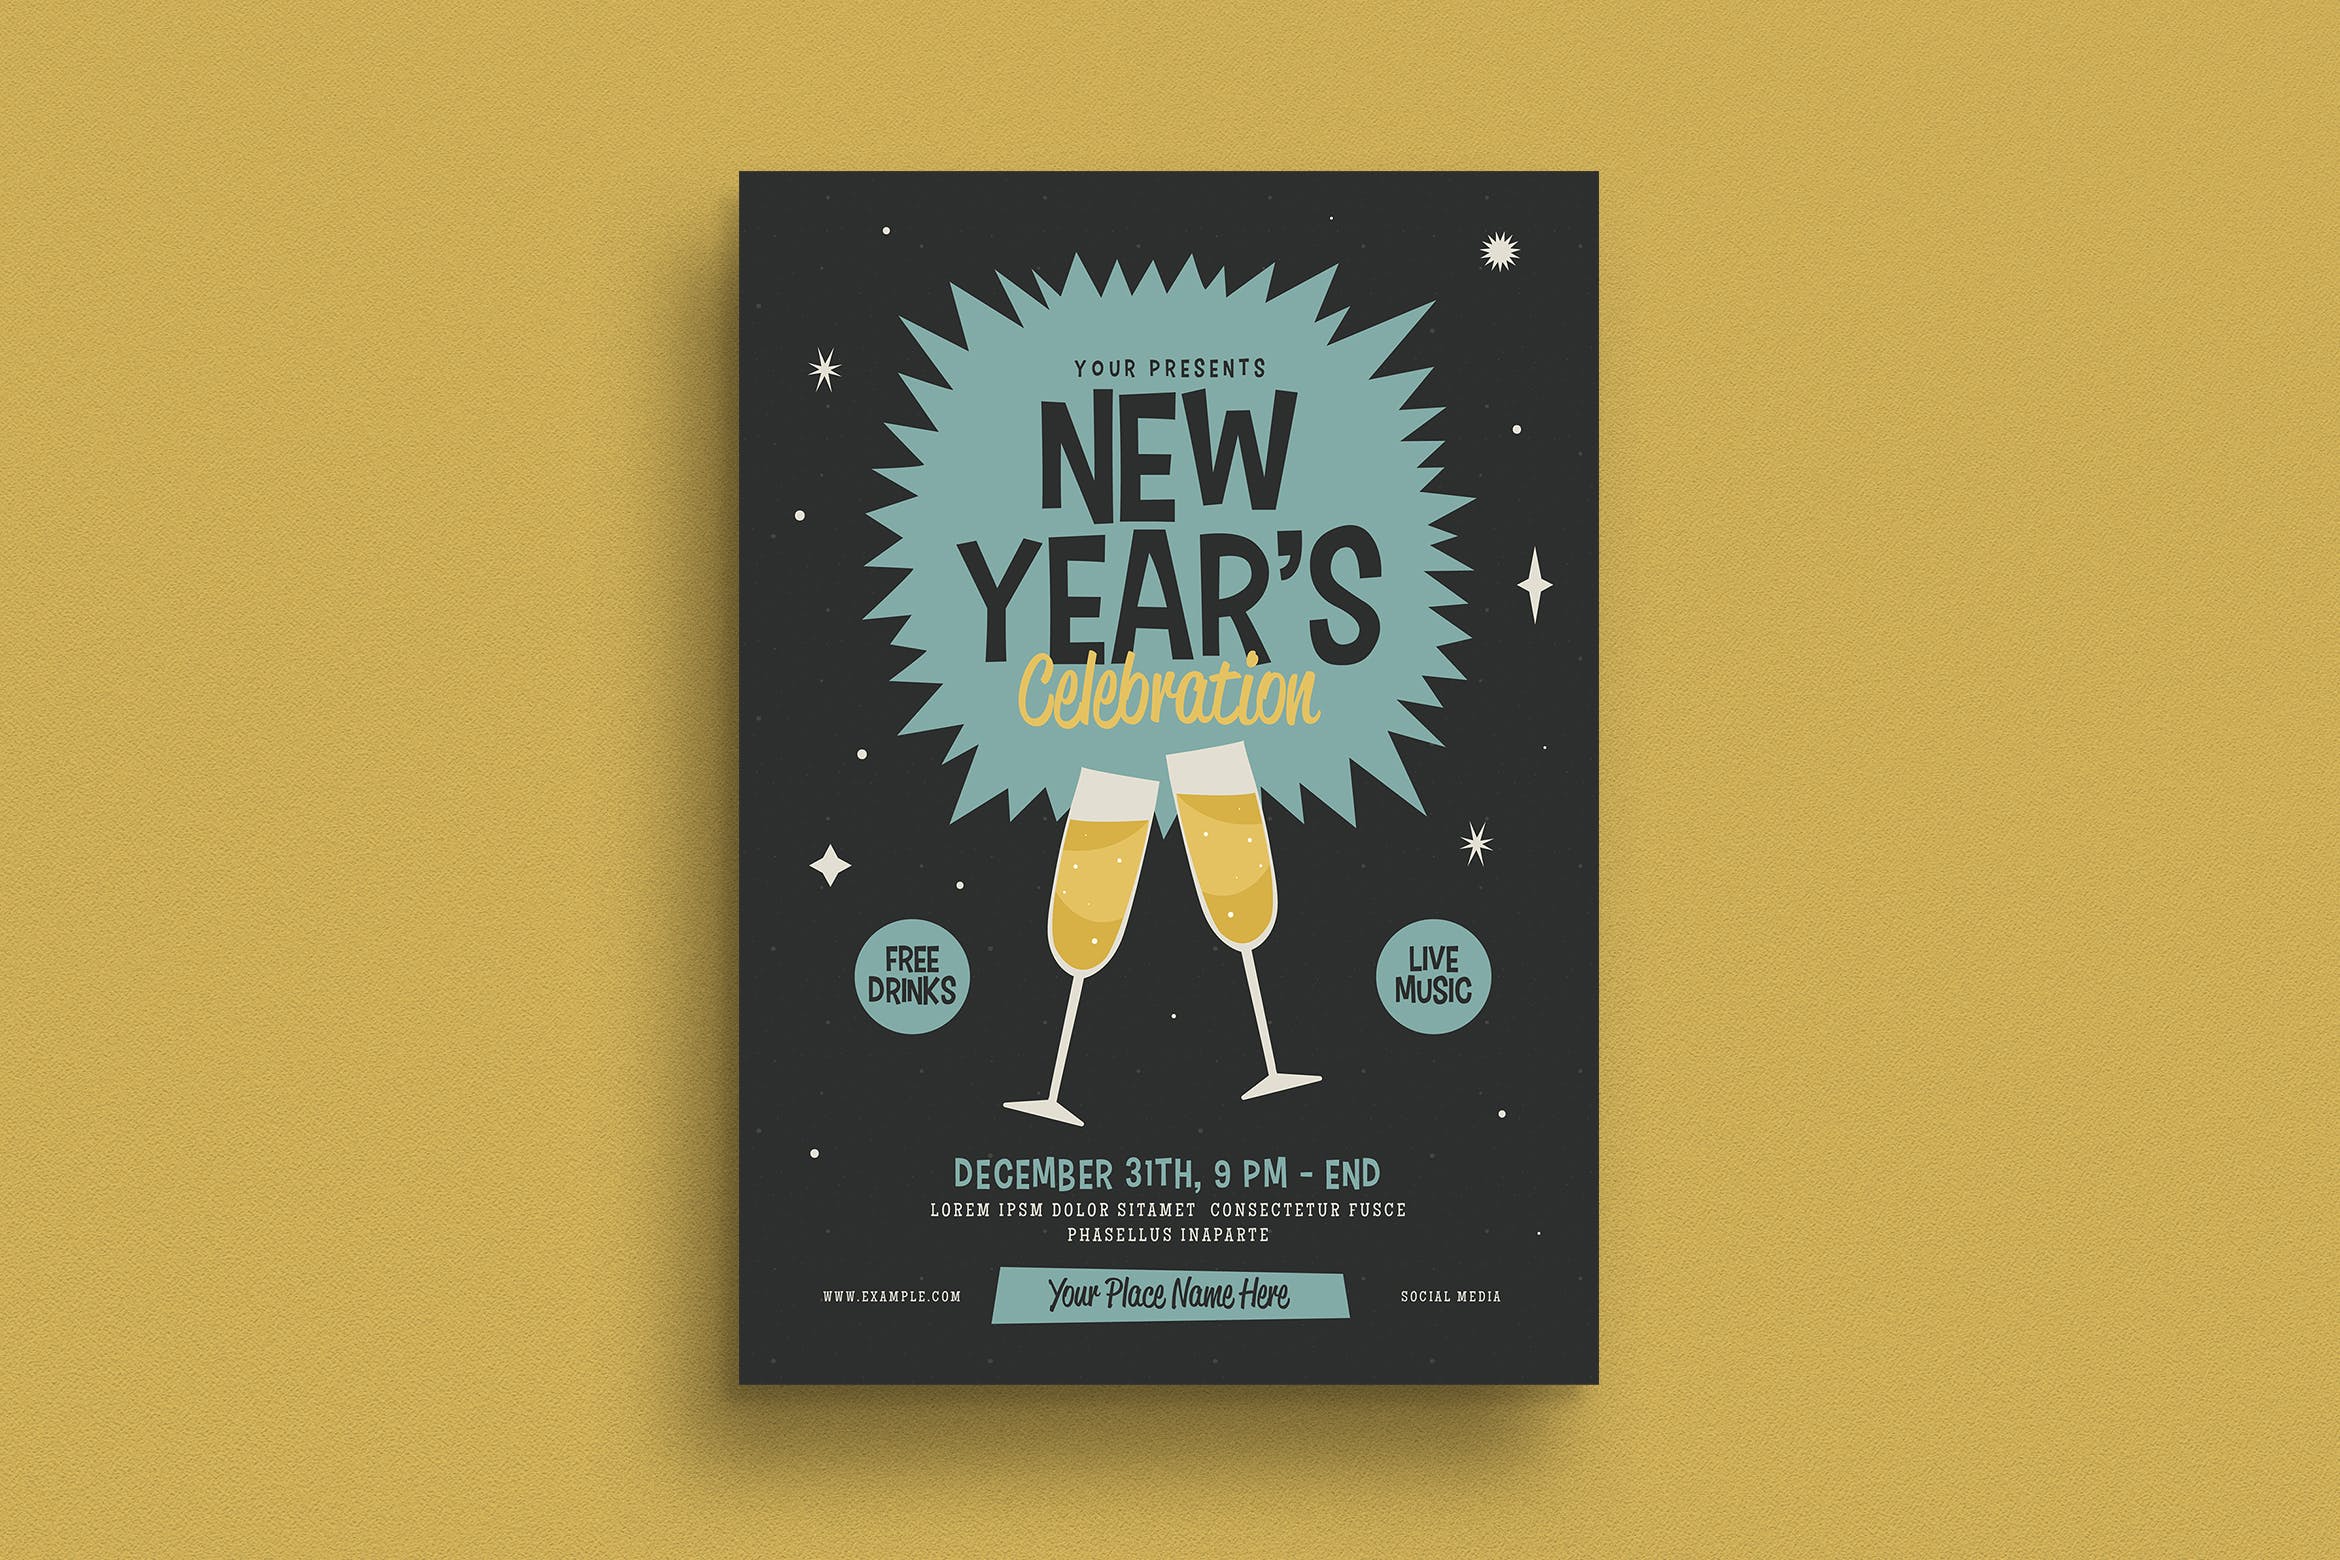 复古设计风格新年主题活动传单海报模板 Retro New Year’s Event Flyer插图